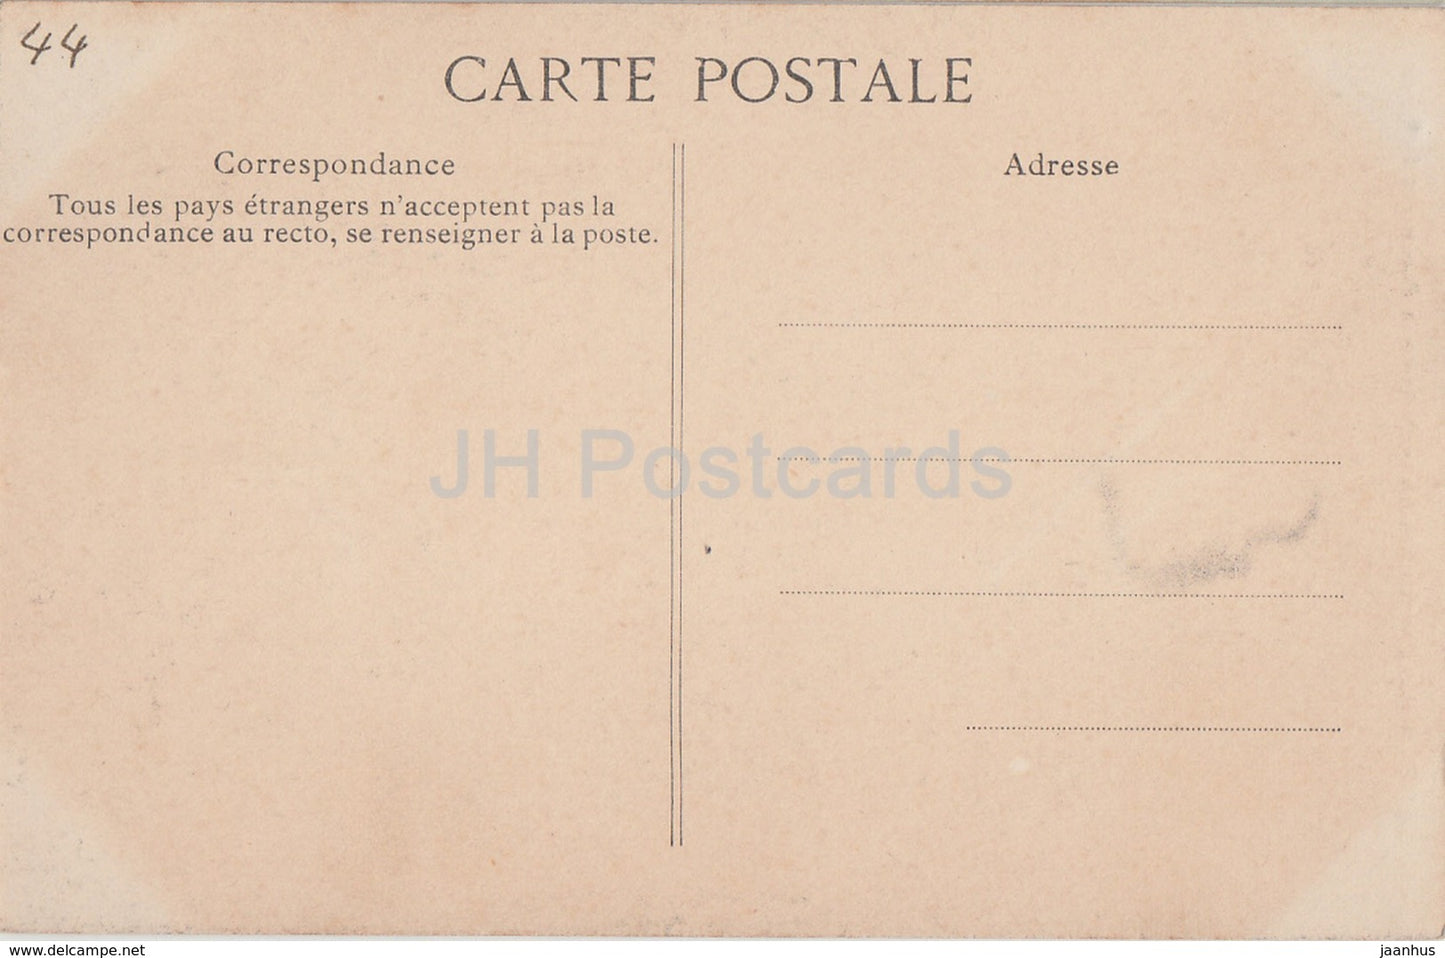 Clisson - Le Chateau - Porte de la Prison des Hommes - Gefängnis - Schloss - alte Postkarte - Frankreich - unbenutzt